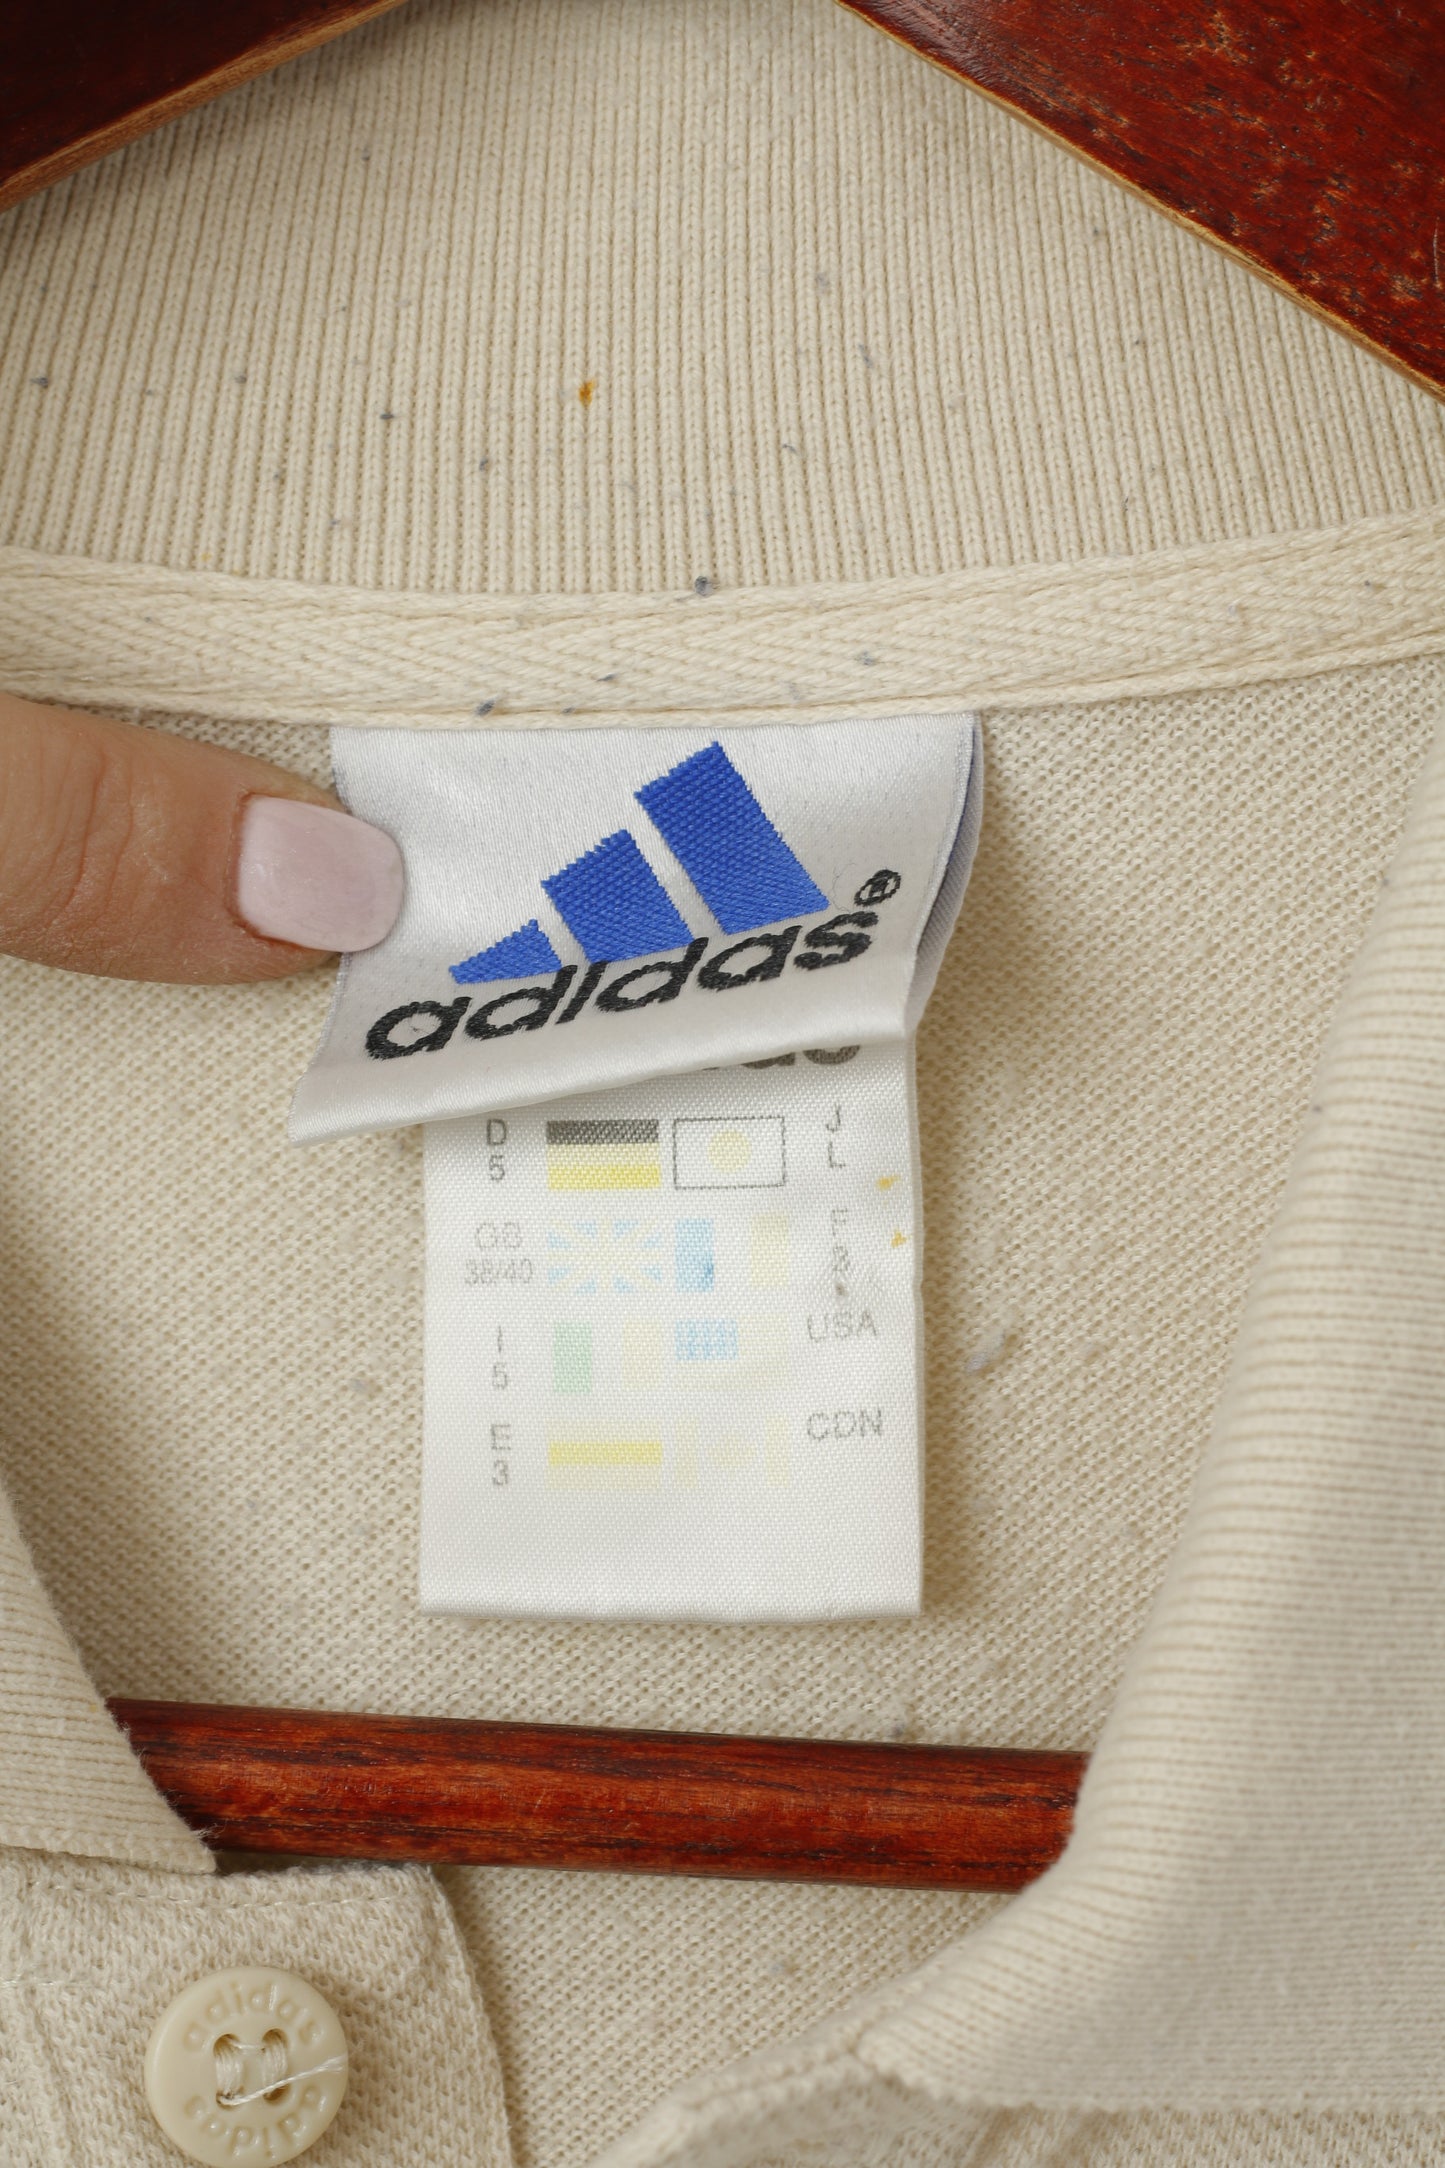 Polo Adidas da uomo 38/40 M. Maglietta a maniche corte classica vintage in cotone beige